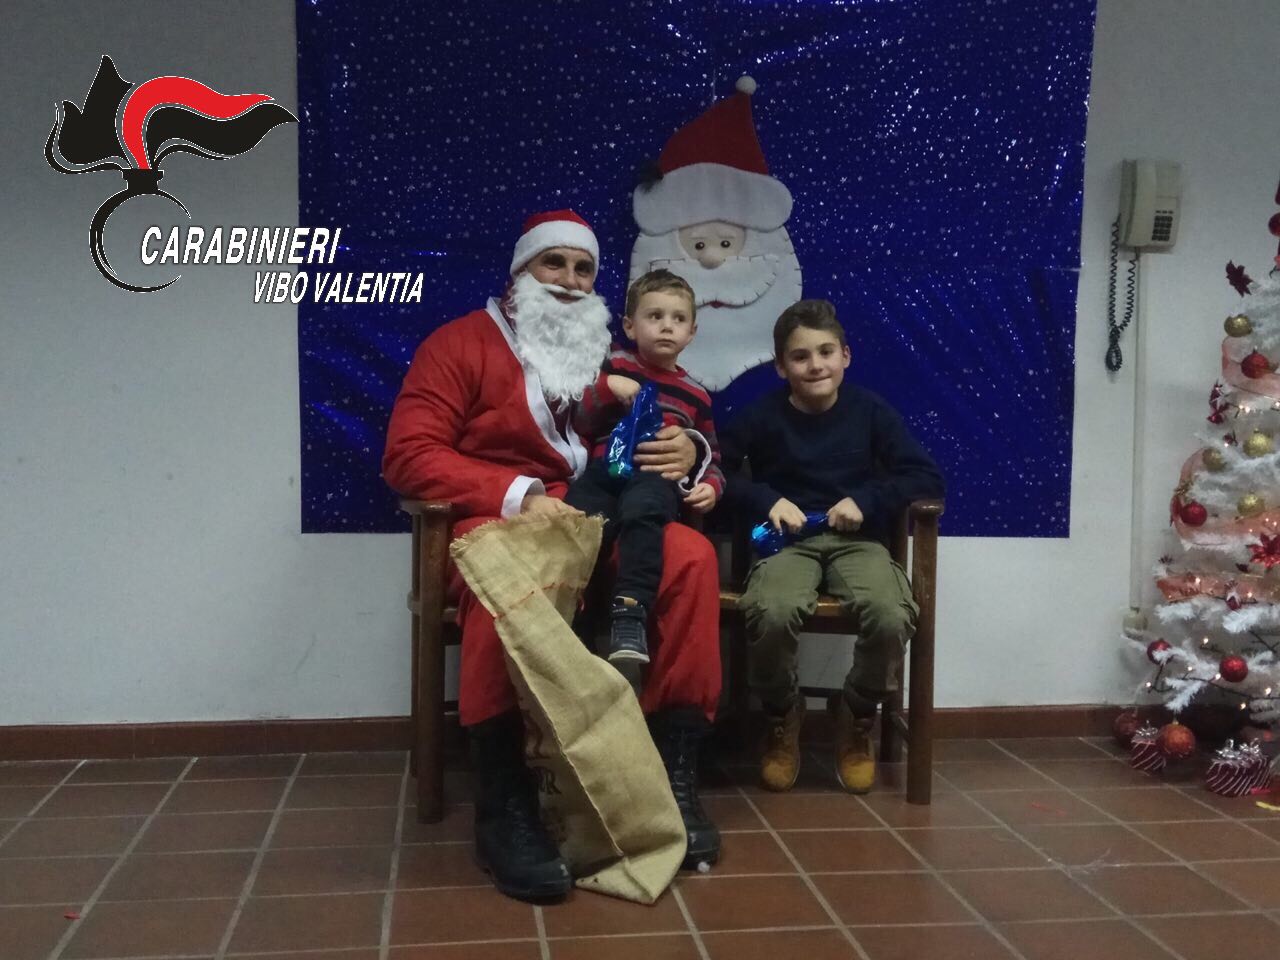 Babbo Natale Video.Si Cala Dal Tetto Portando Doni Ai Bambini Carabiniere Babbo Natale In Calabria Foto E Video Stretto Web